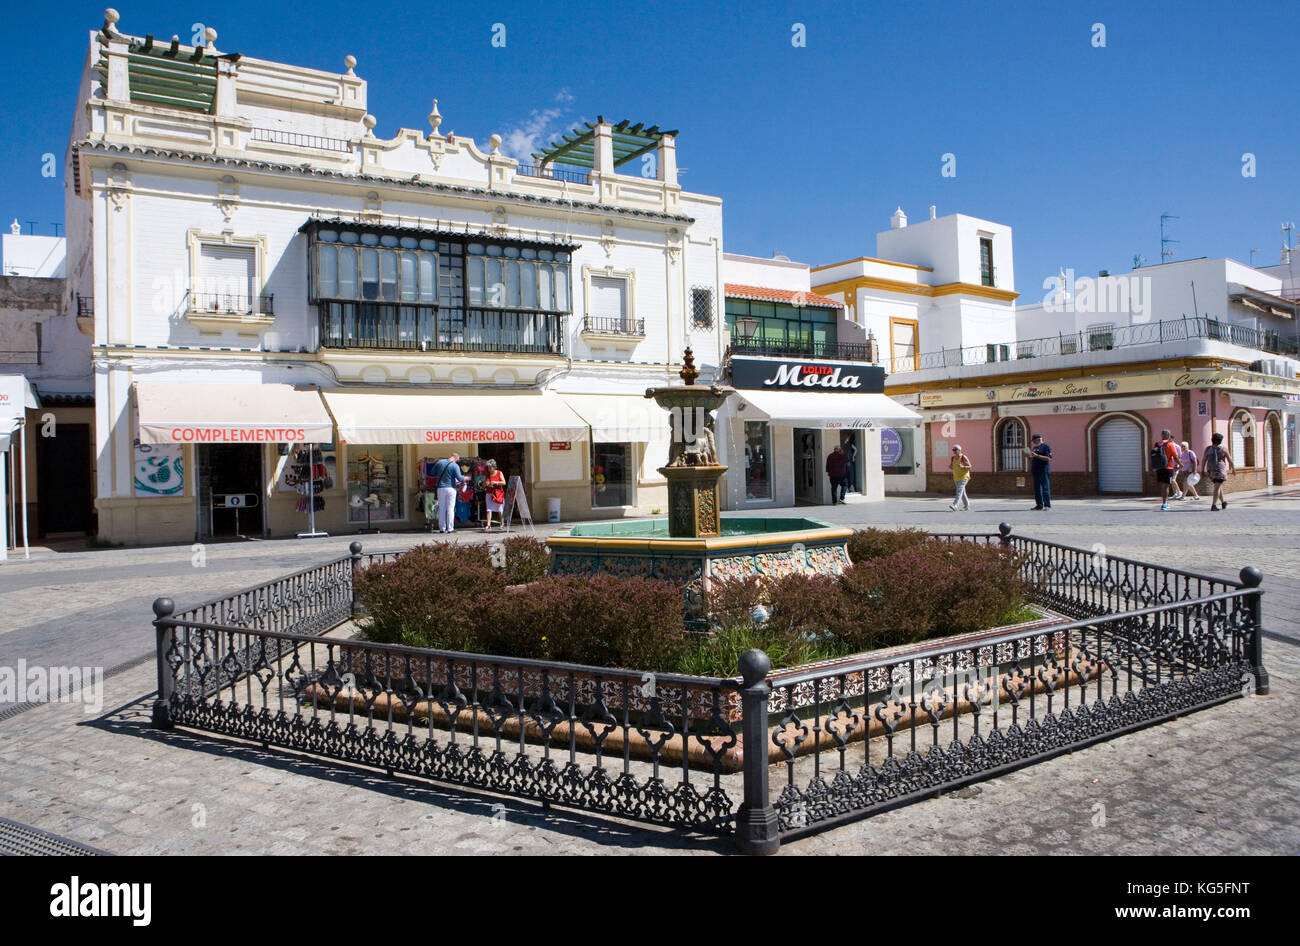 Ayamonte, città di frontiera per il Portogallo, di viaggio, di confine è rio guadiana (fiume), circa 21 mila abitanti, Plaza de la Ribera, fontane Foto Stock